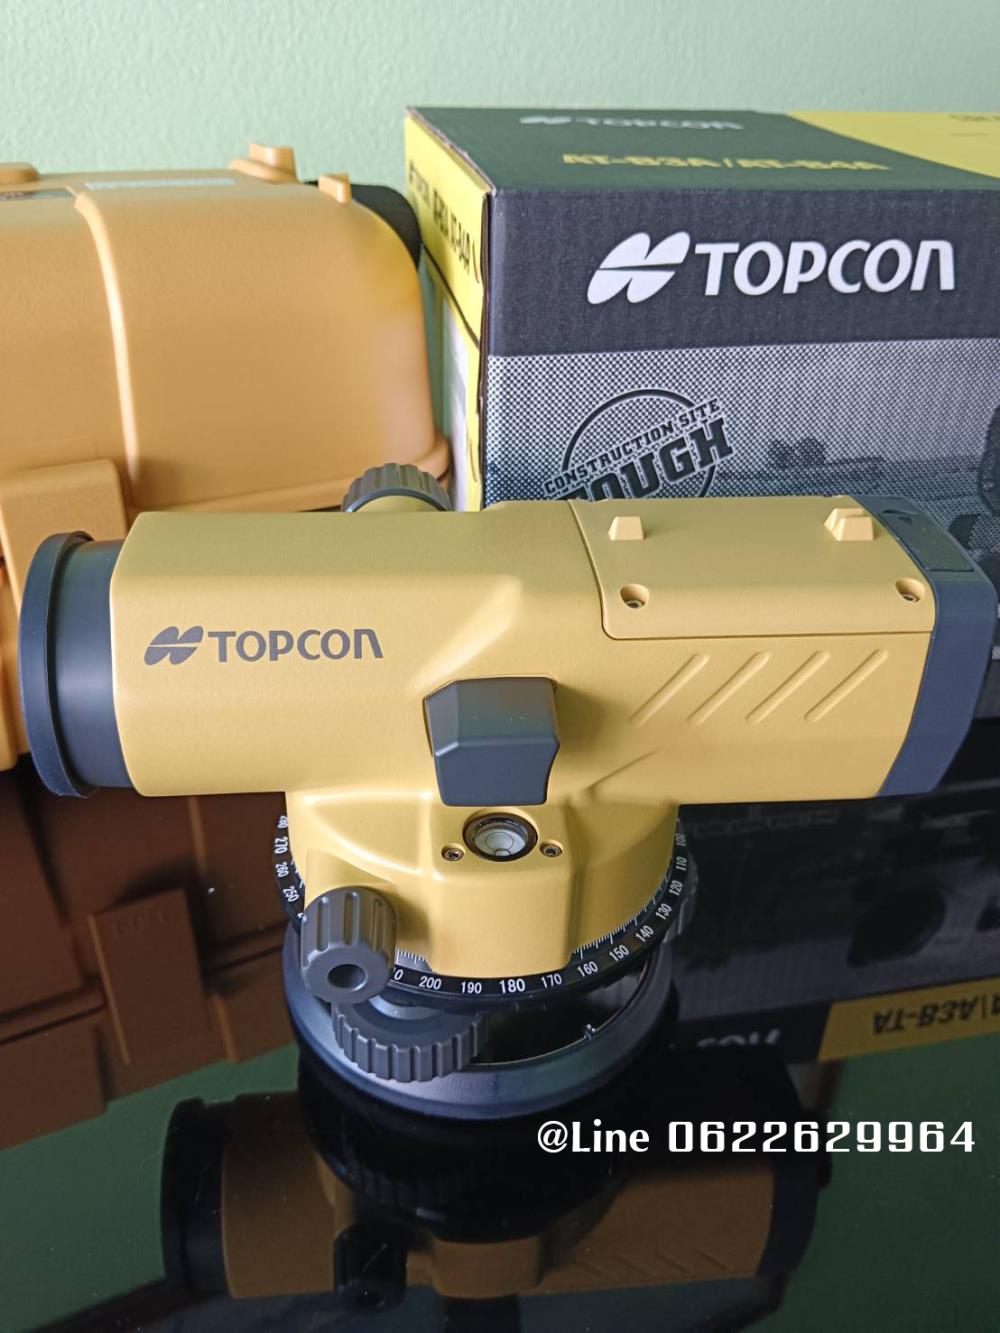 กล้องวัดระดับ TOPCON รุ่น AT-B4A (24x),TOPCON, AT-B4A, Digital level, topcon, กล้องวัดระดับ,,TOPCON,Tool and Tooling/Other Tools